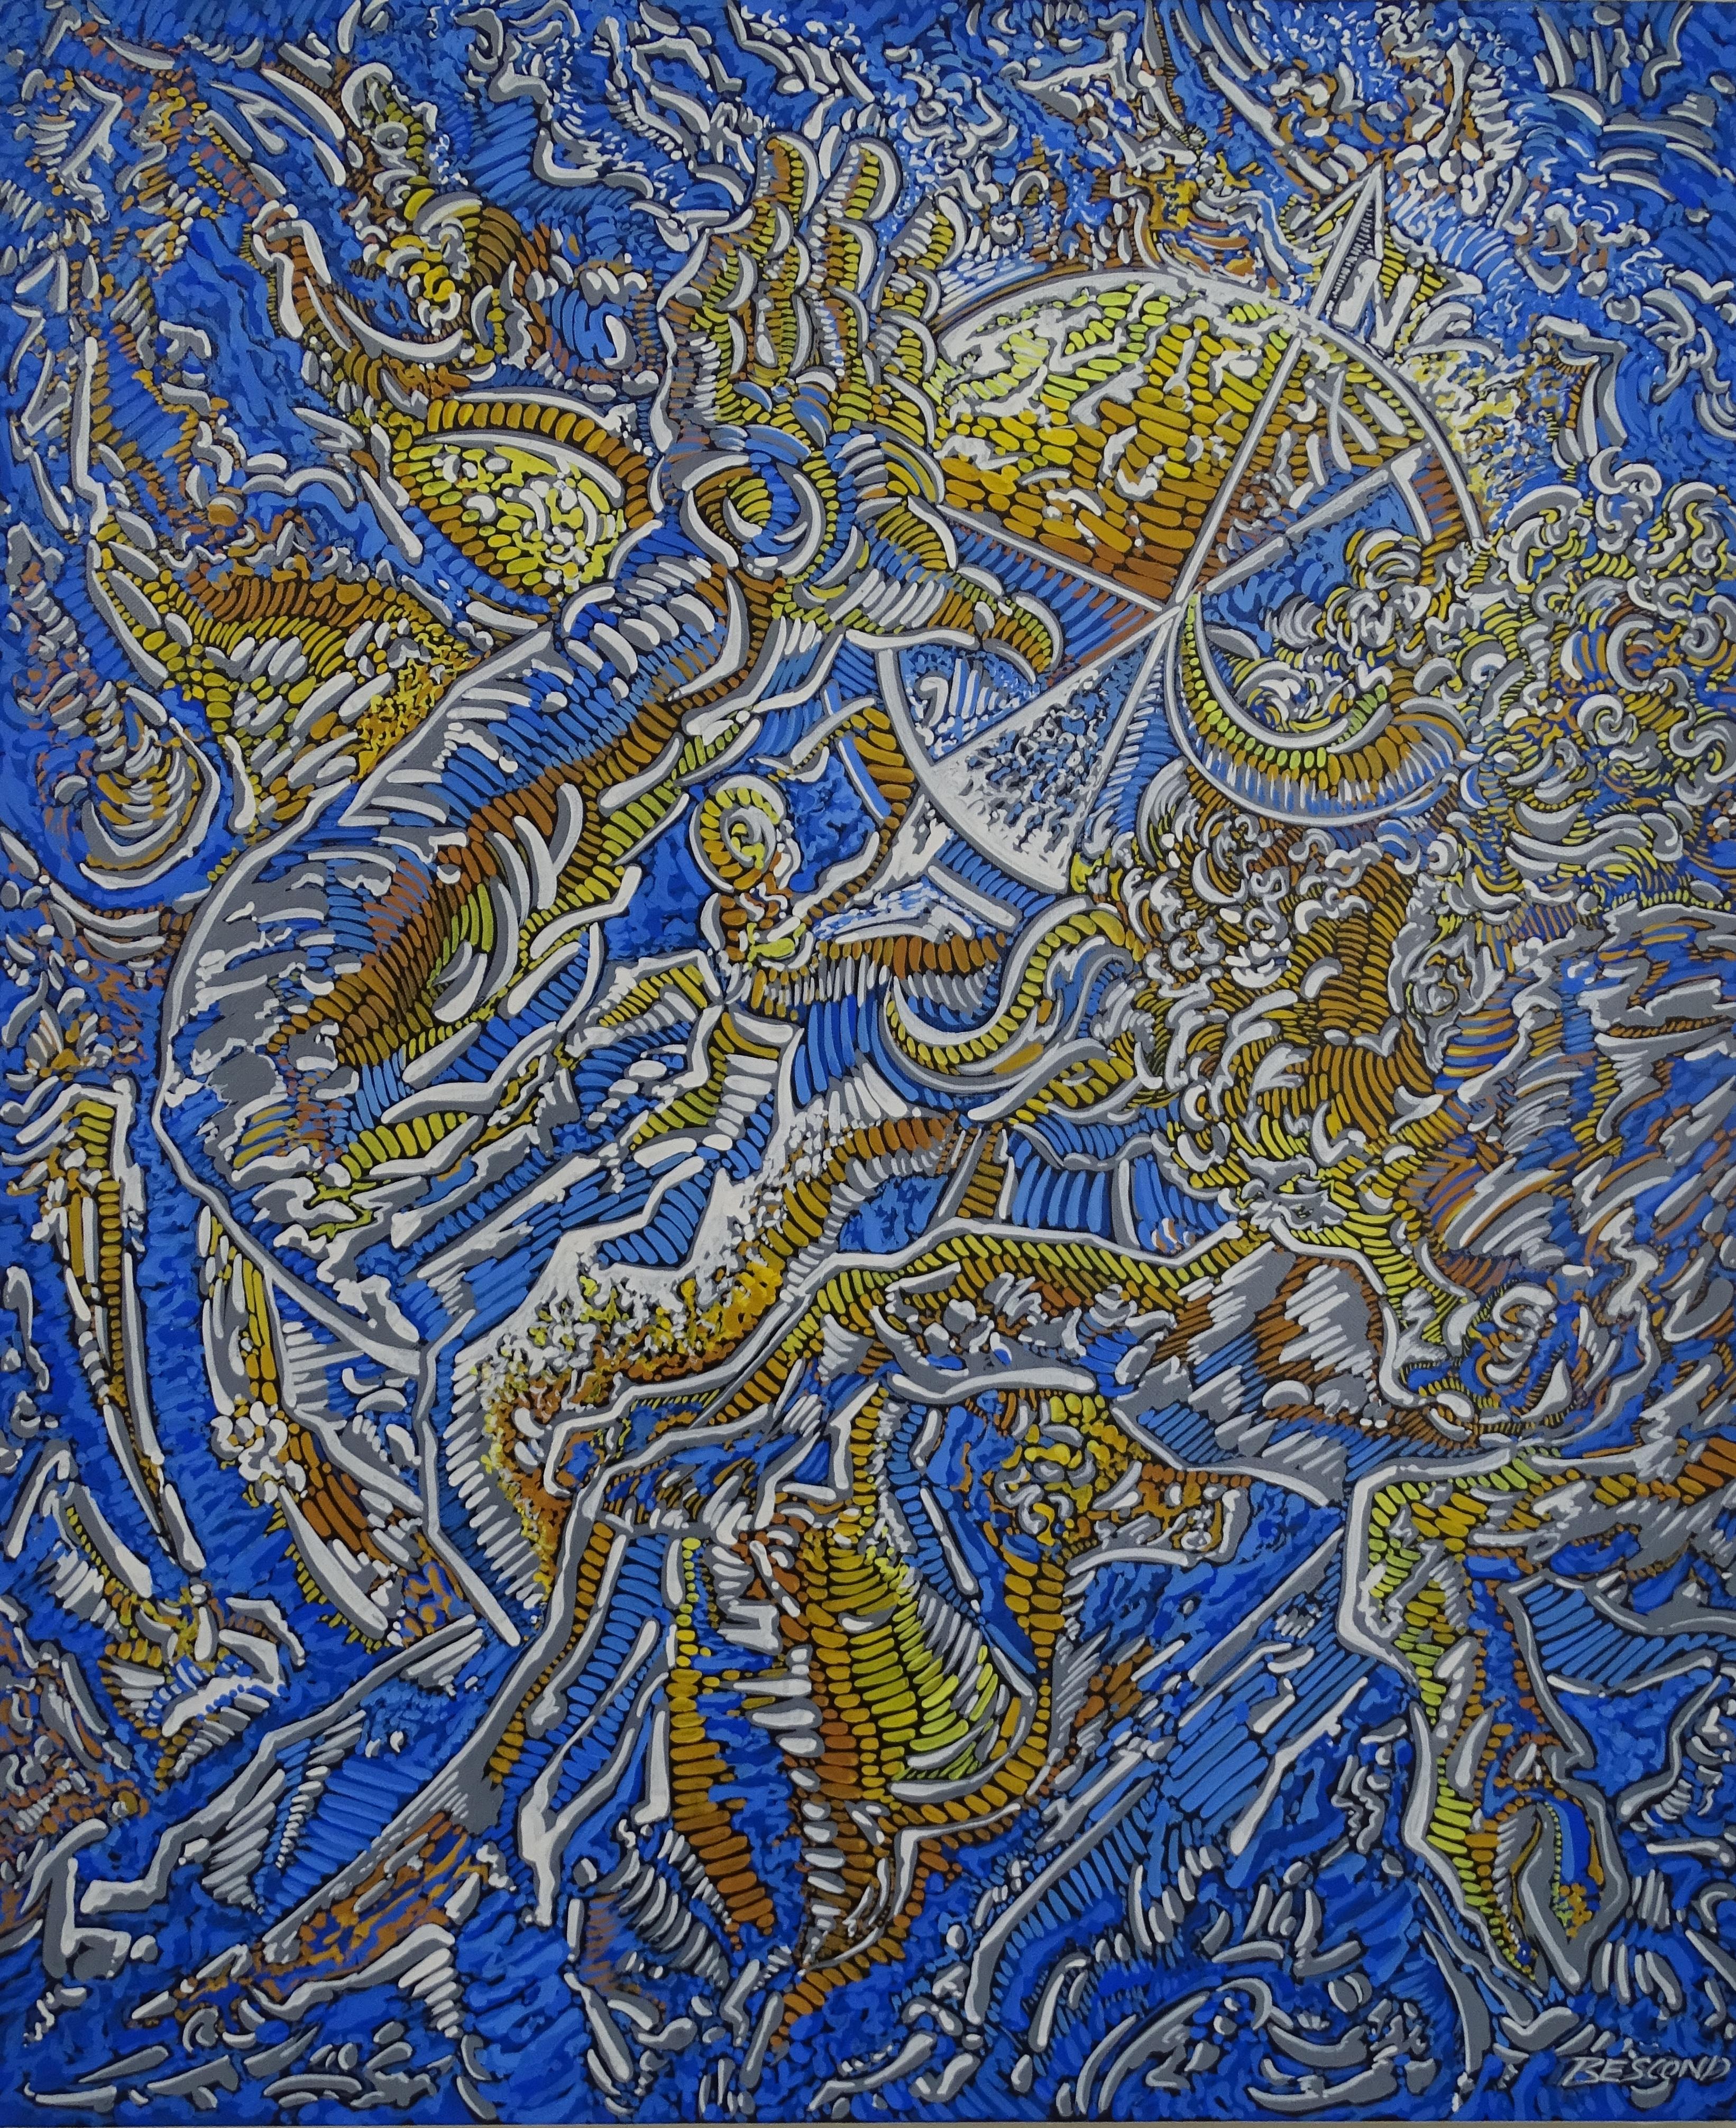 "Labyrinthine paths", Charging Minotaur Daedalus Mythological Acrylic Painting